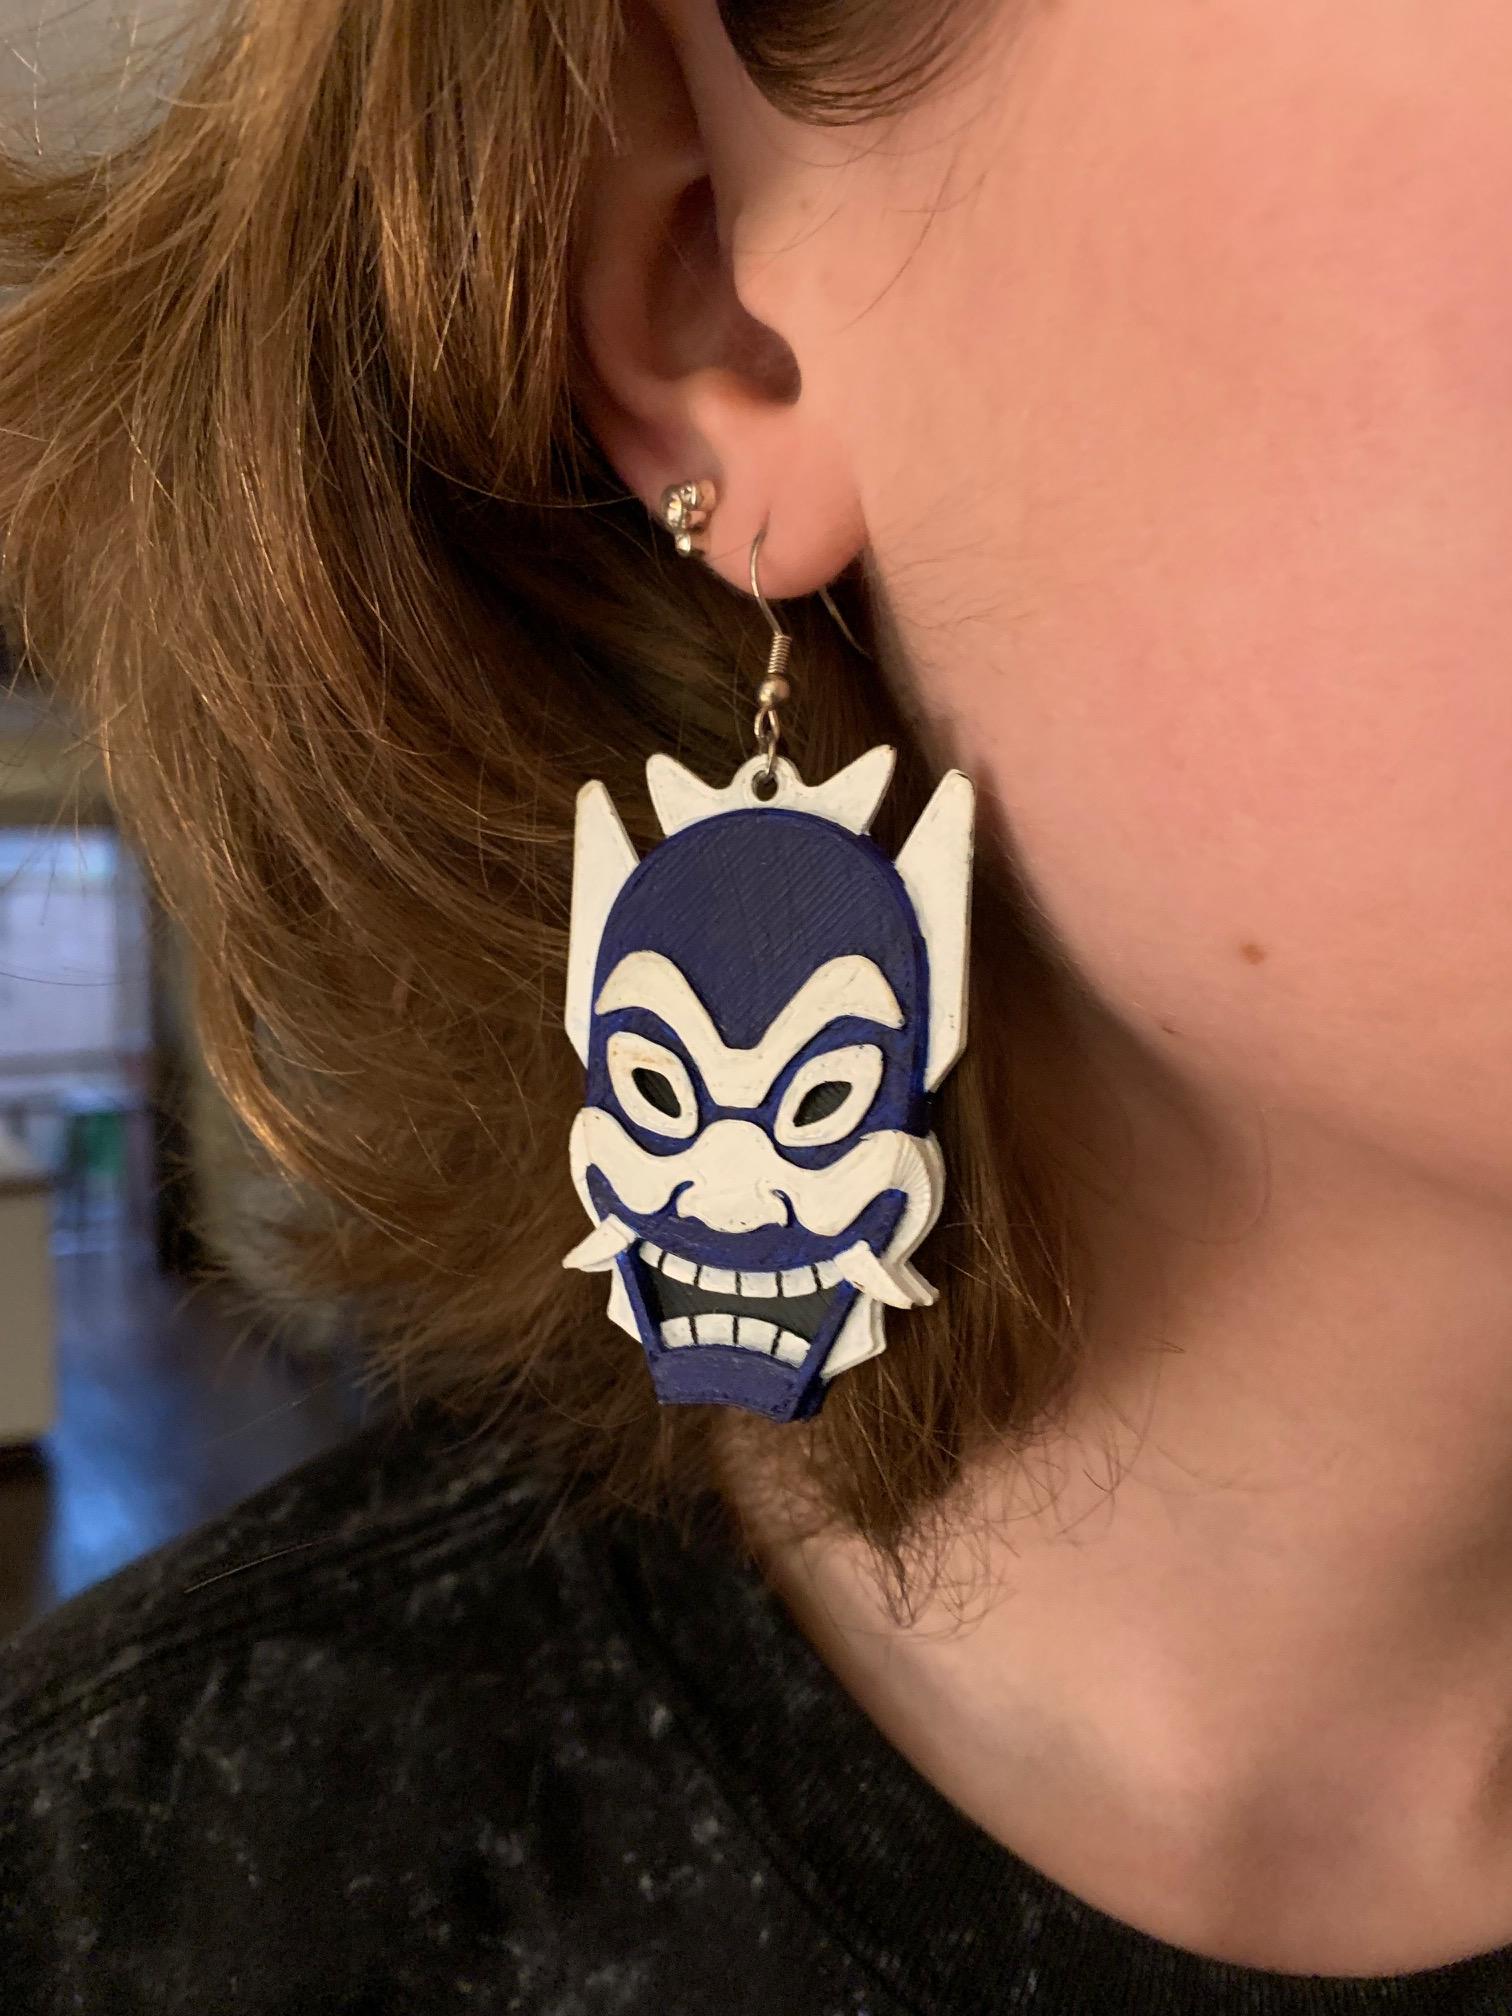 Blue Spirit Mask Earings.step 3d model